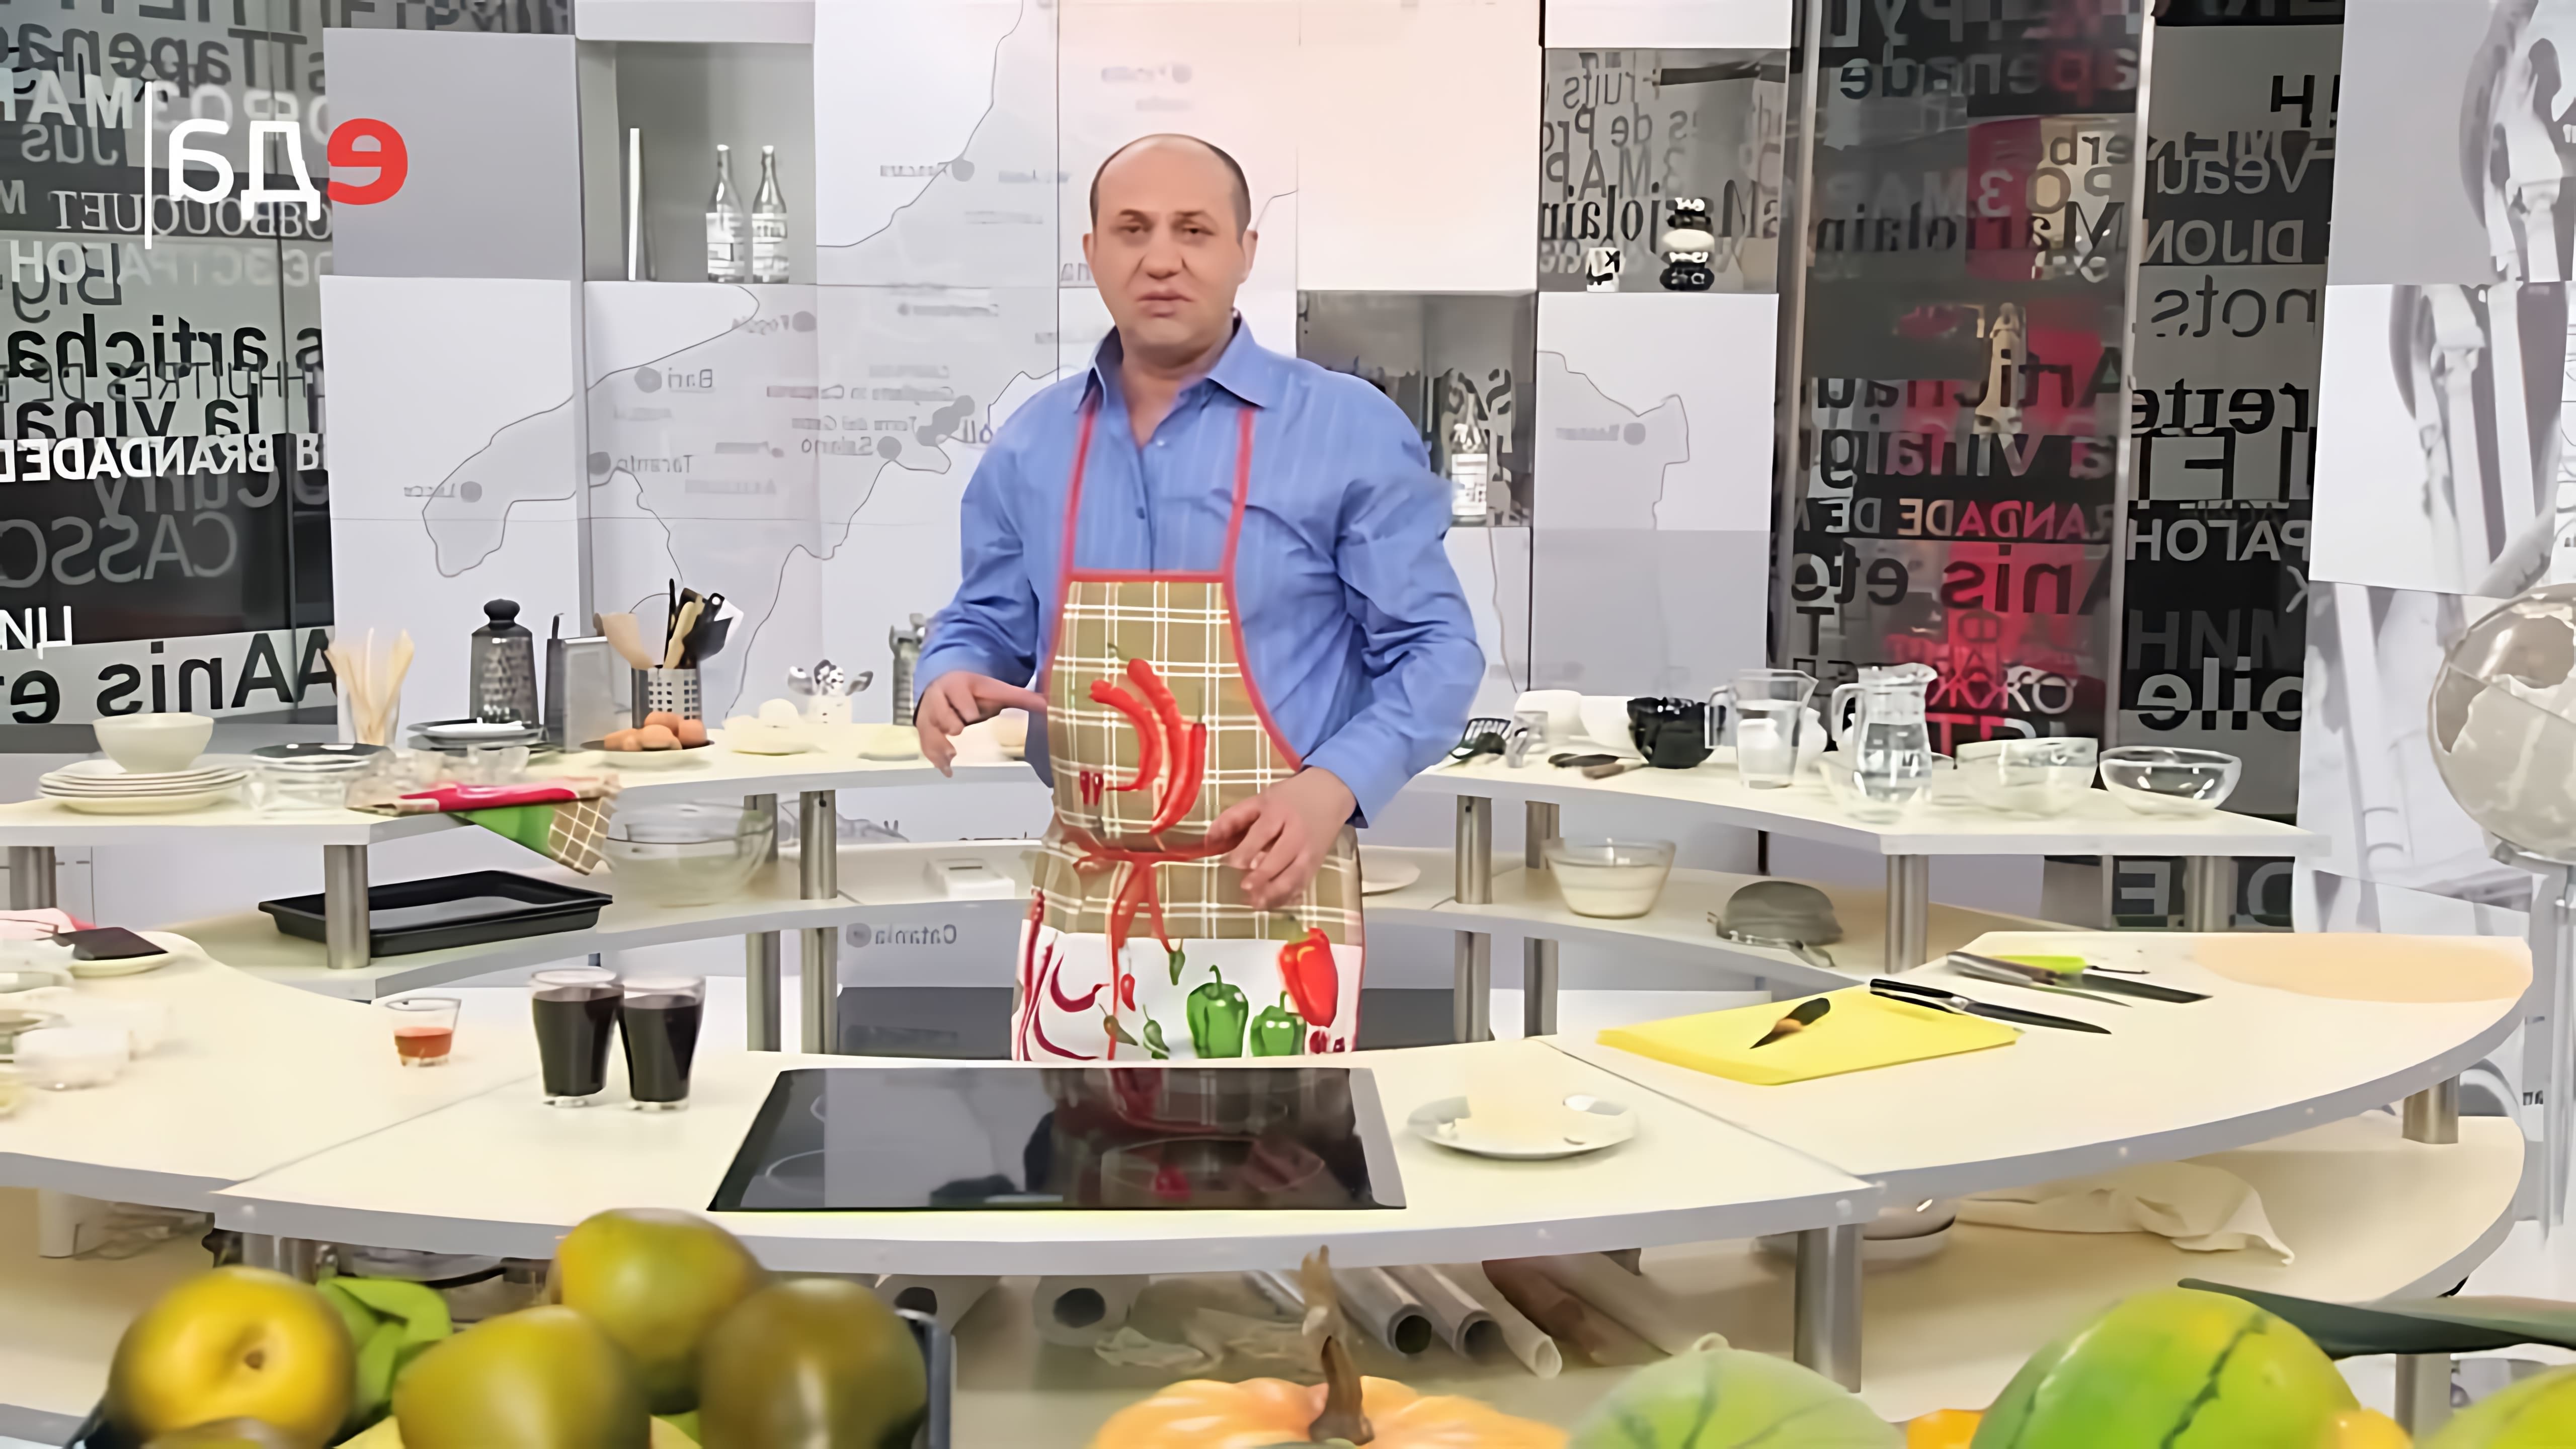 В данном видео-ролике, который является частью программы "Мировой повар" на телеканале "ТВ Еда", демонстрируется рецепт приготовления Тирамису